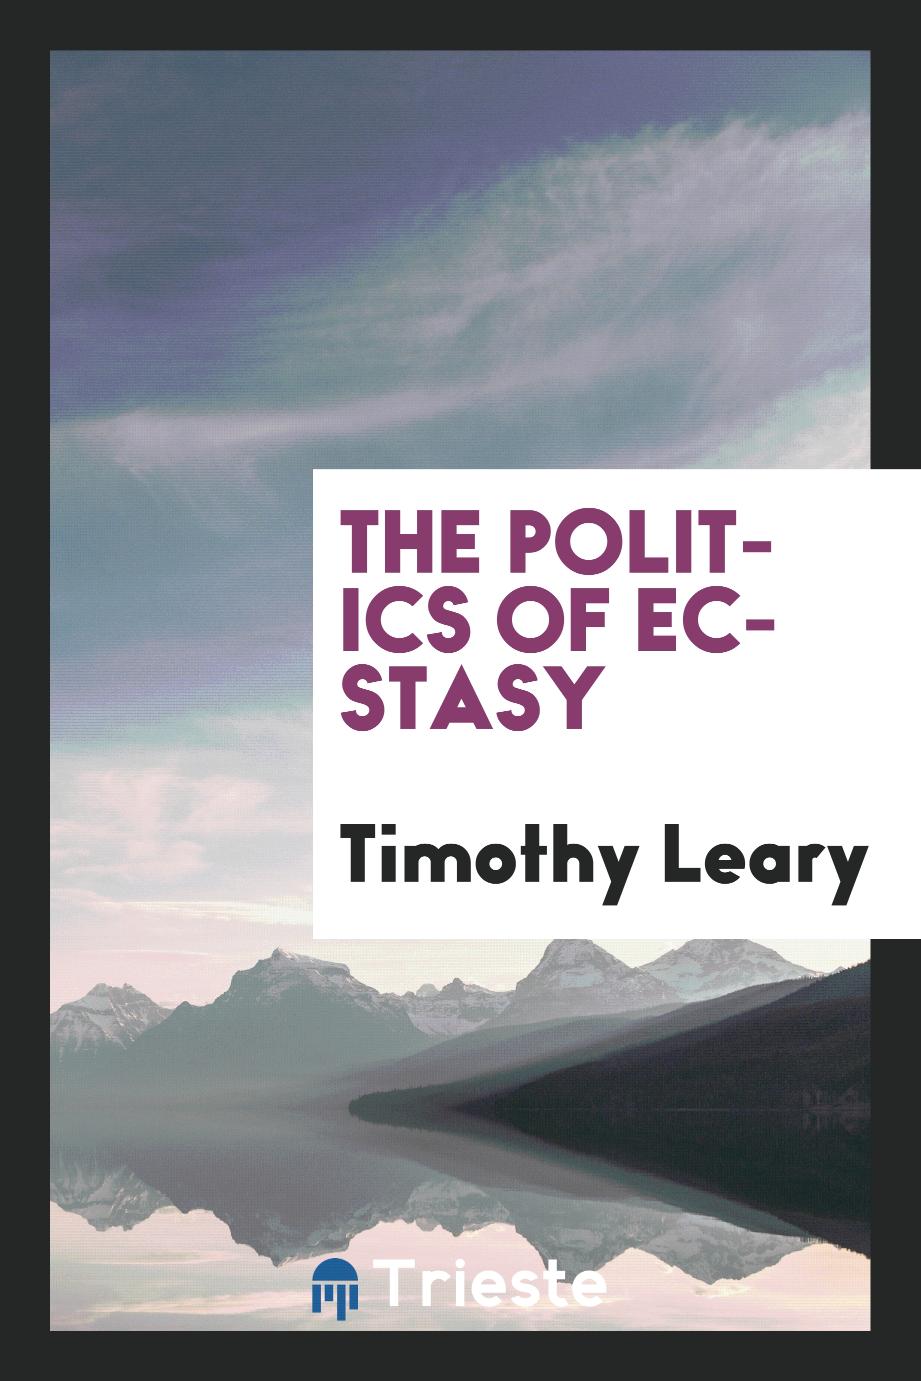 The politics of ecstasy